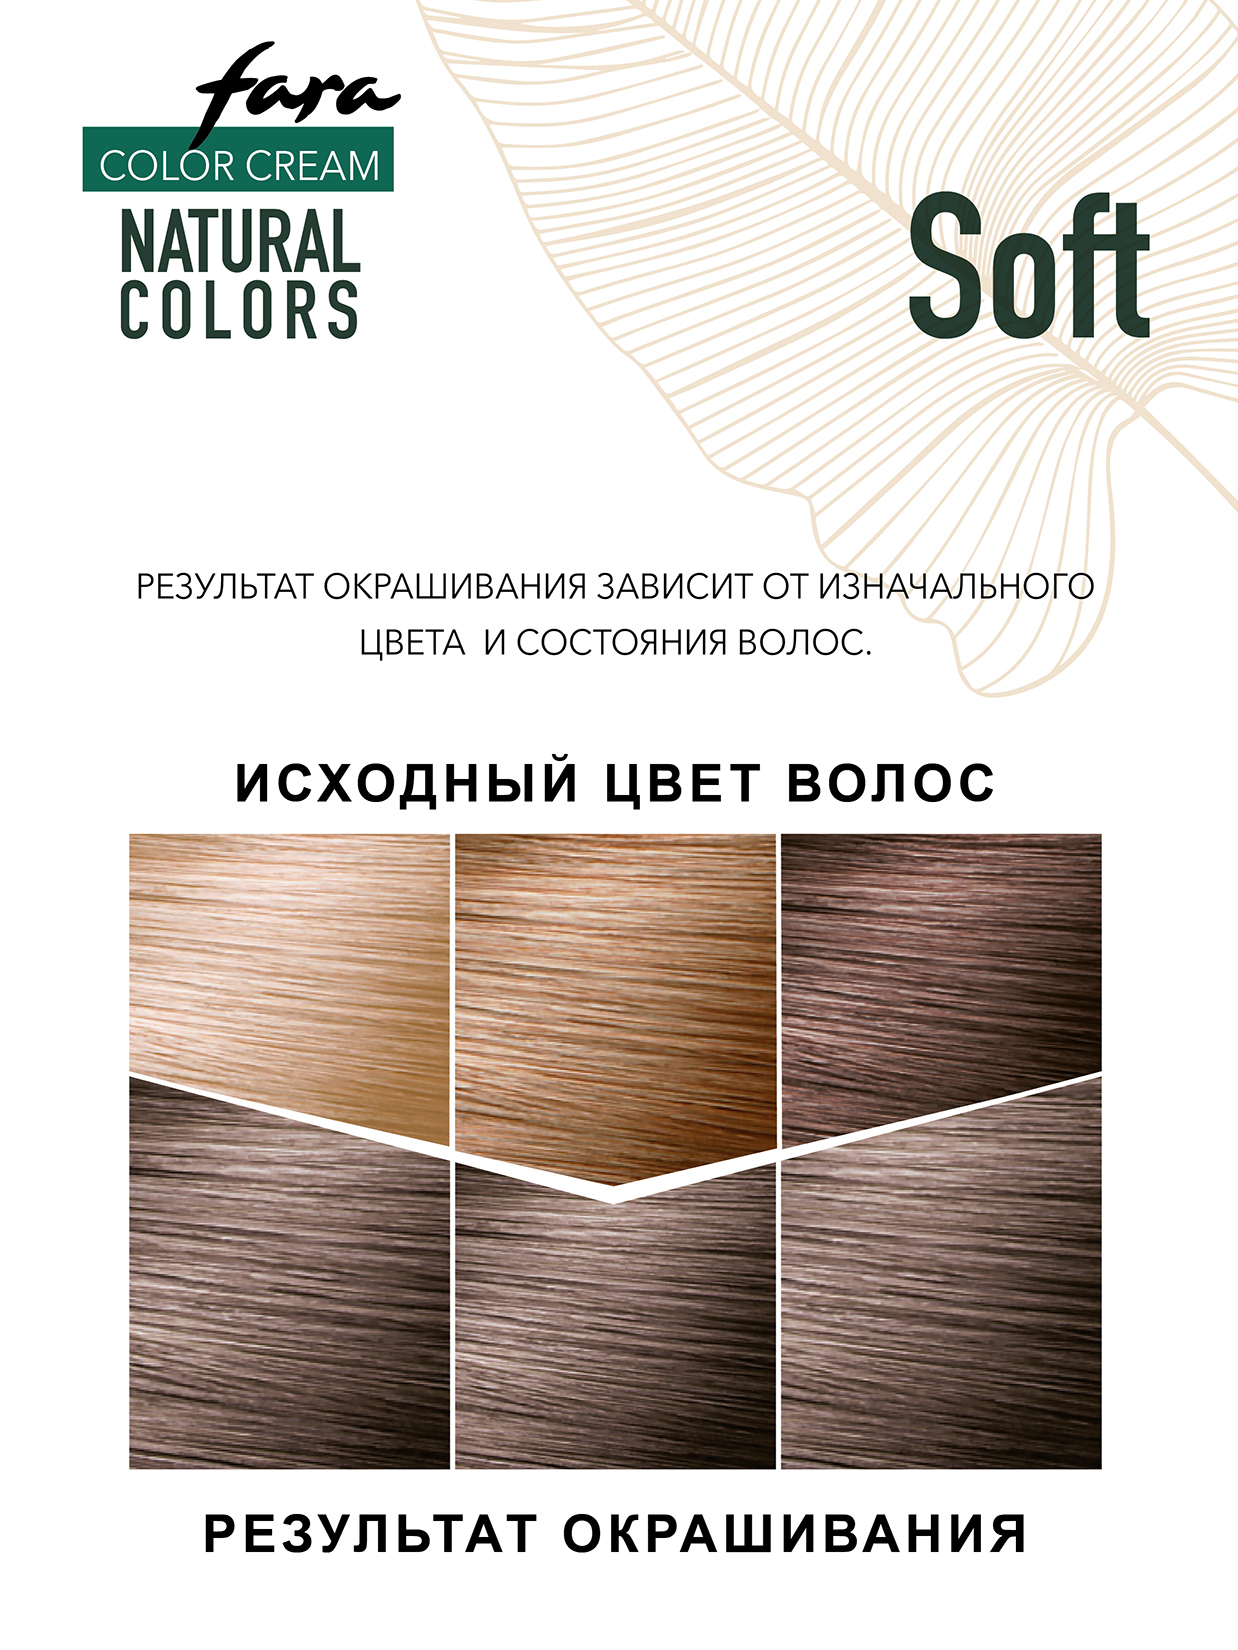 Краска для волос FARA Natural Colors Soft 302 натуральный шоколад - фото 5